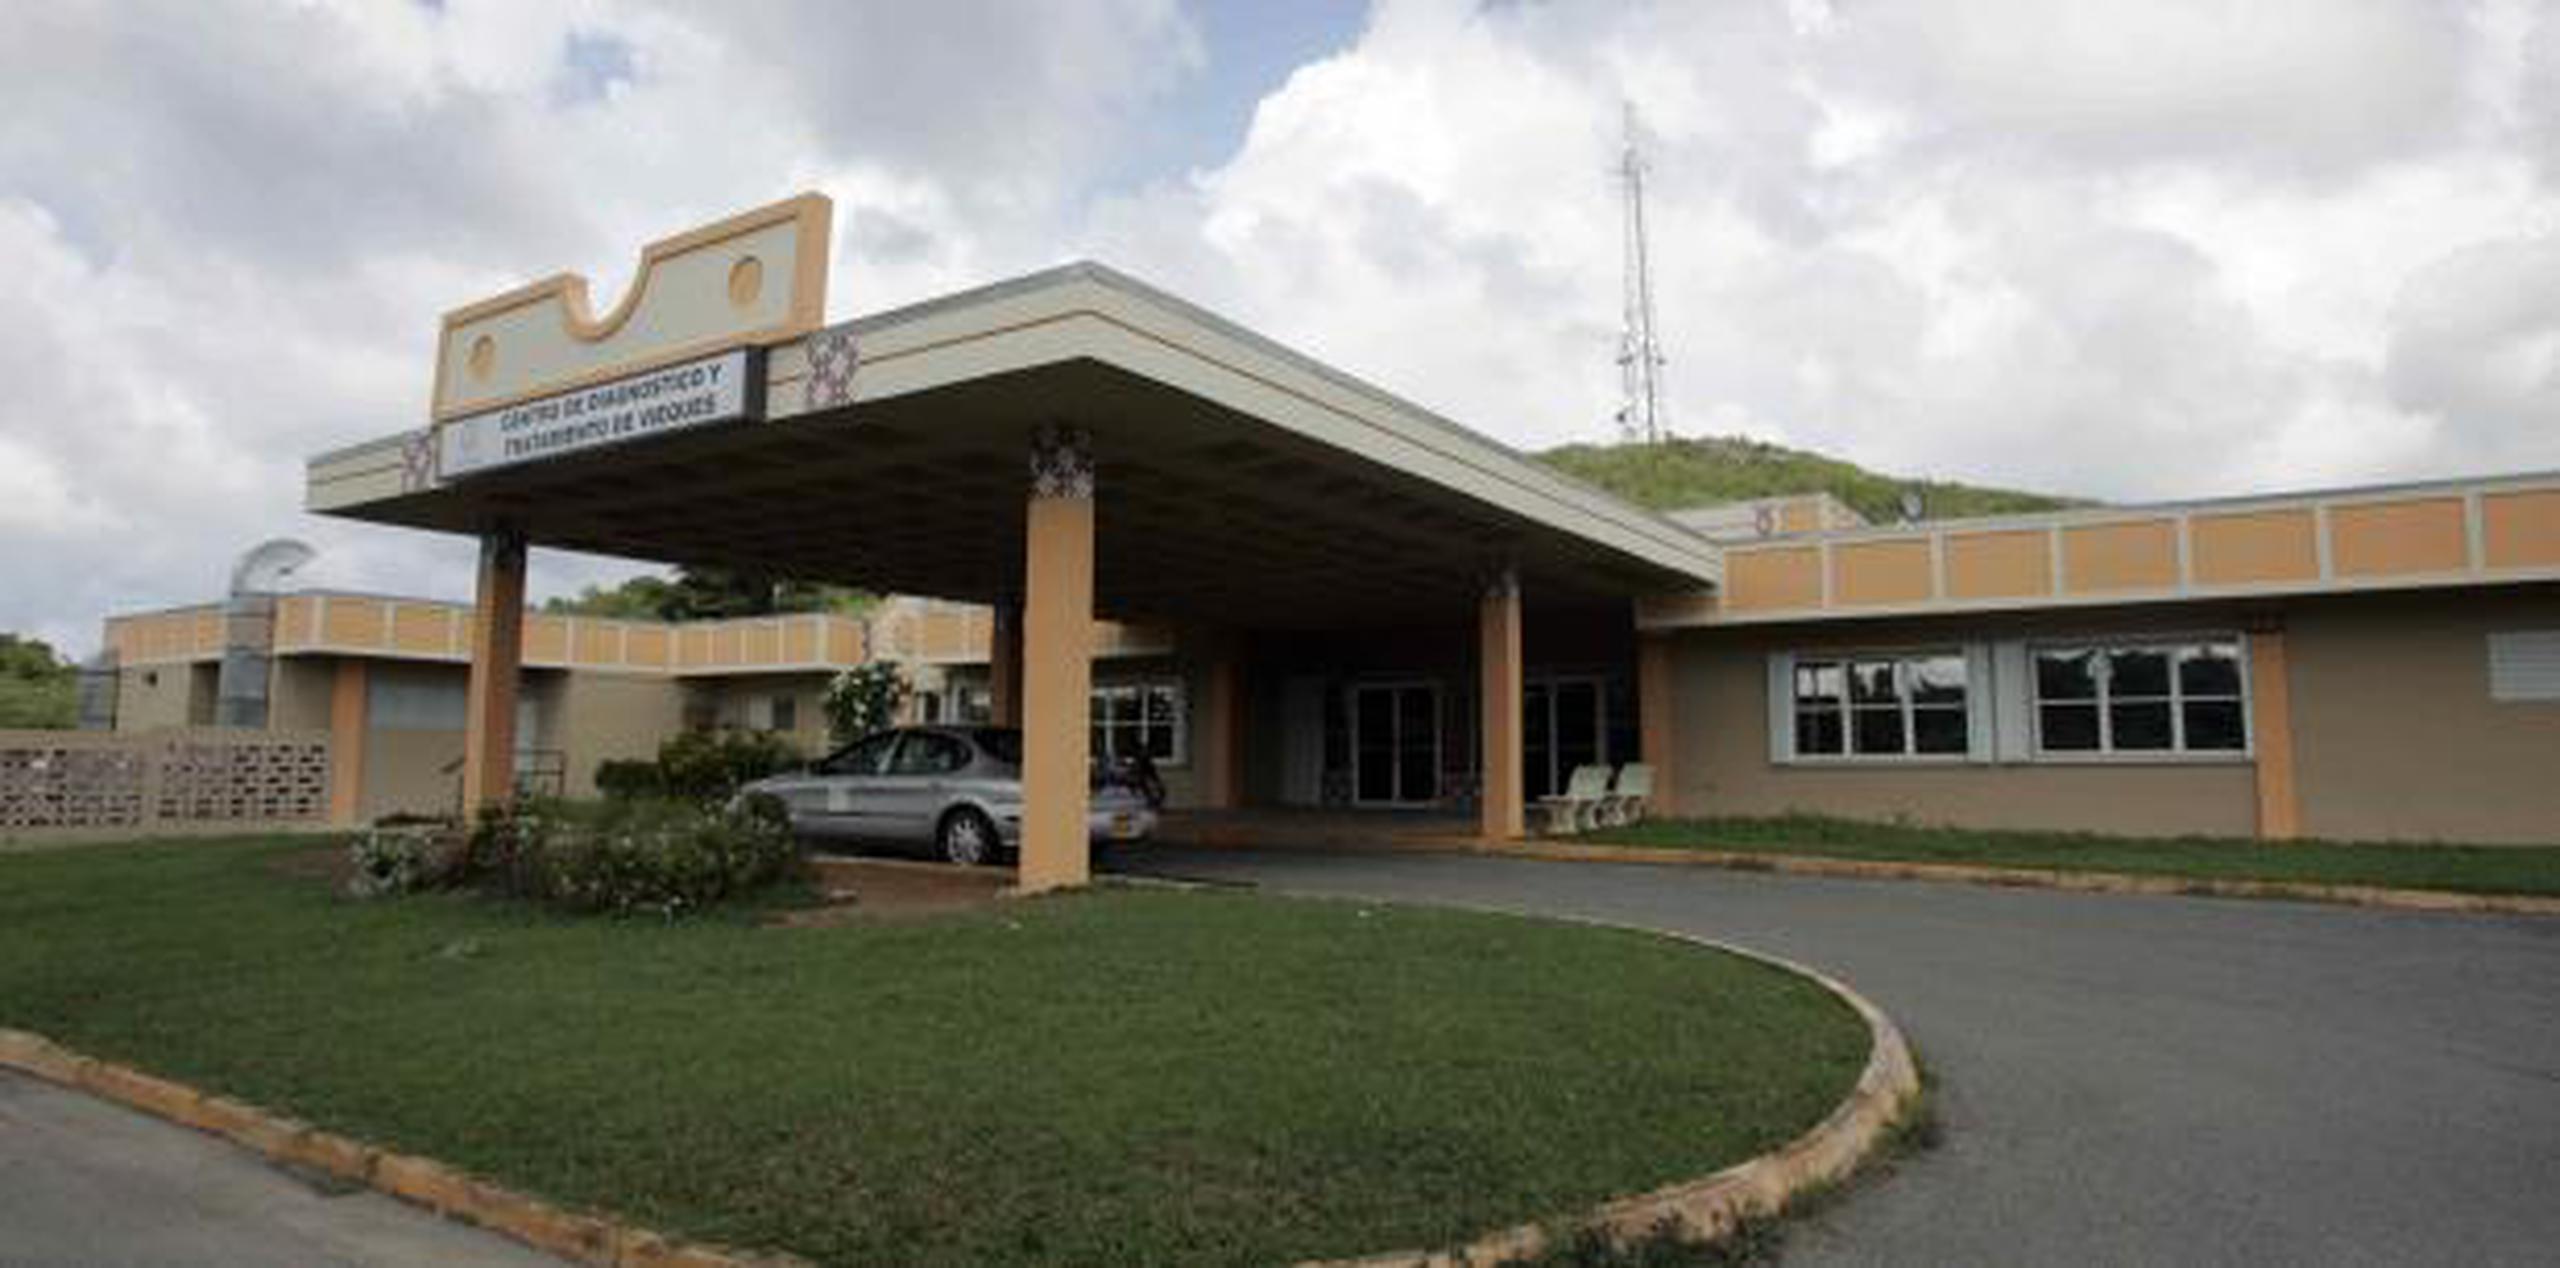 Desde que el huracán María destruyó el hospital Susana Centeno, los servicios fueron trasladados al refugio del municipio, para que el Departamento de Salud pudiera mantener operando la Sala de Emergencias.  (Archivo)